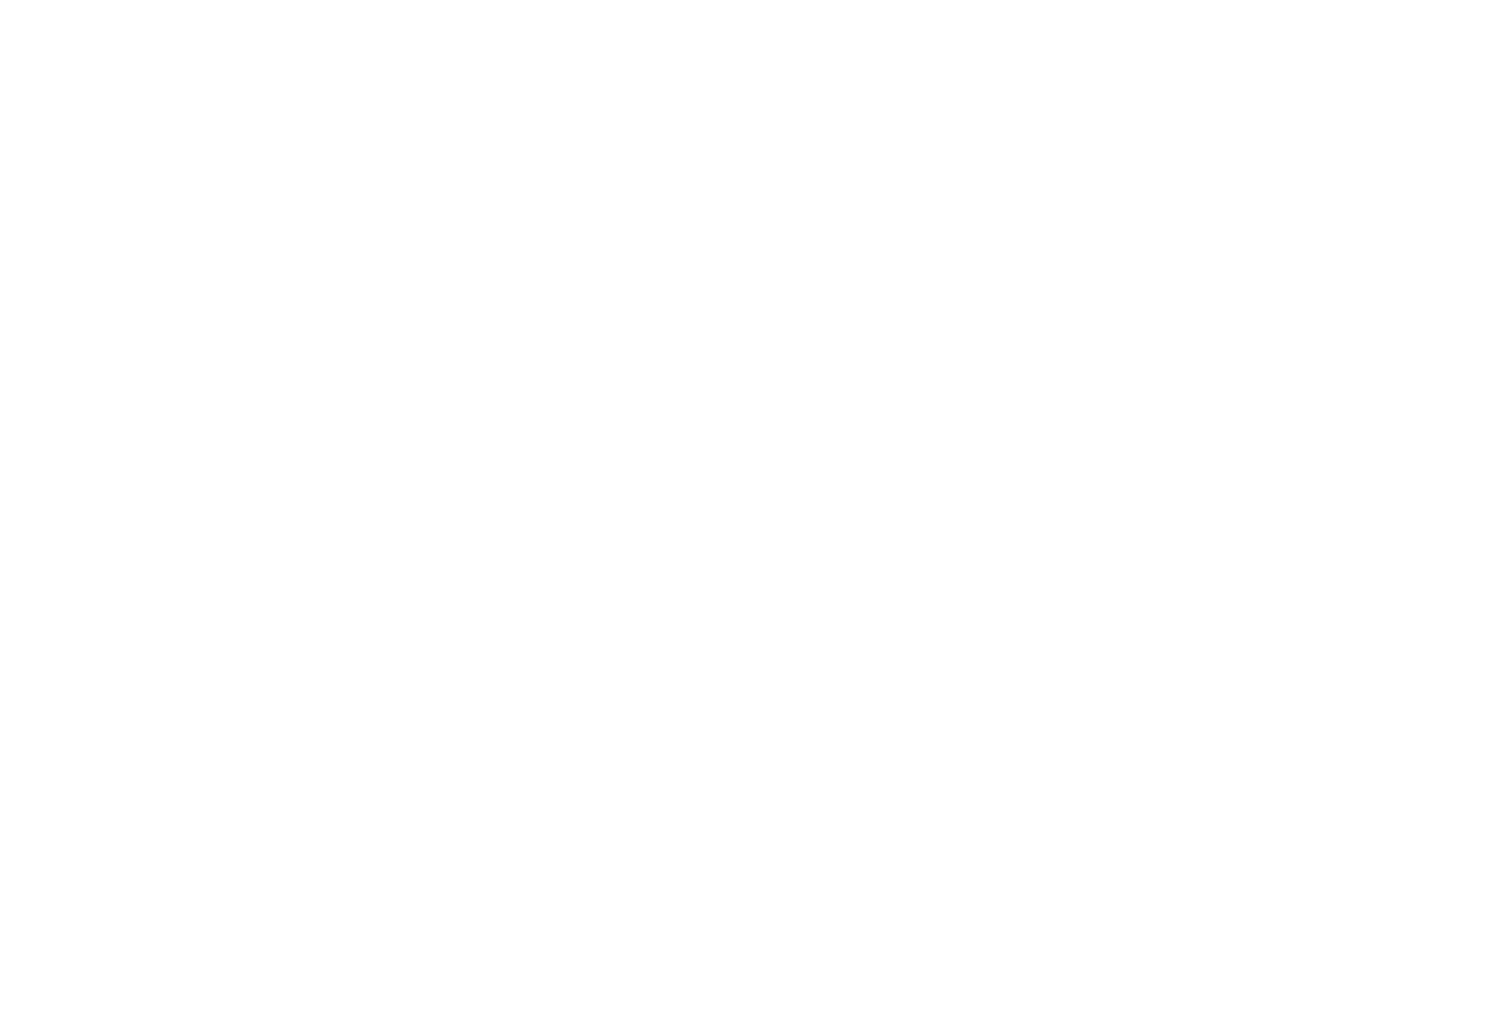 Kate Dawson Events